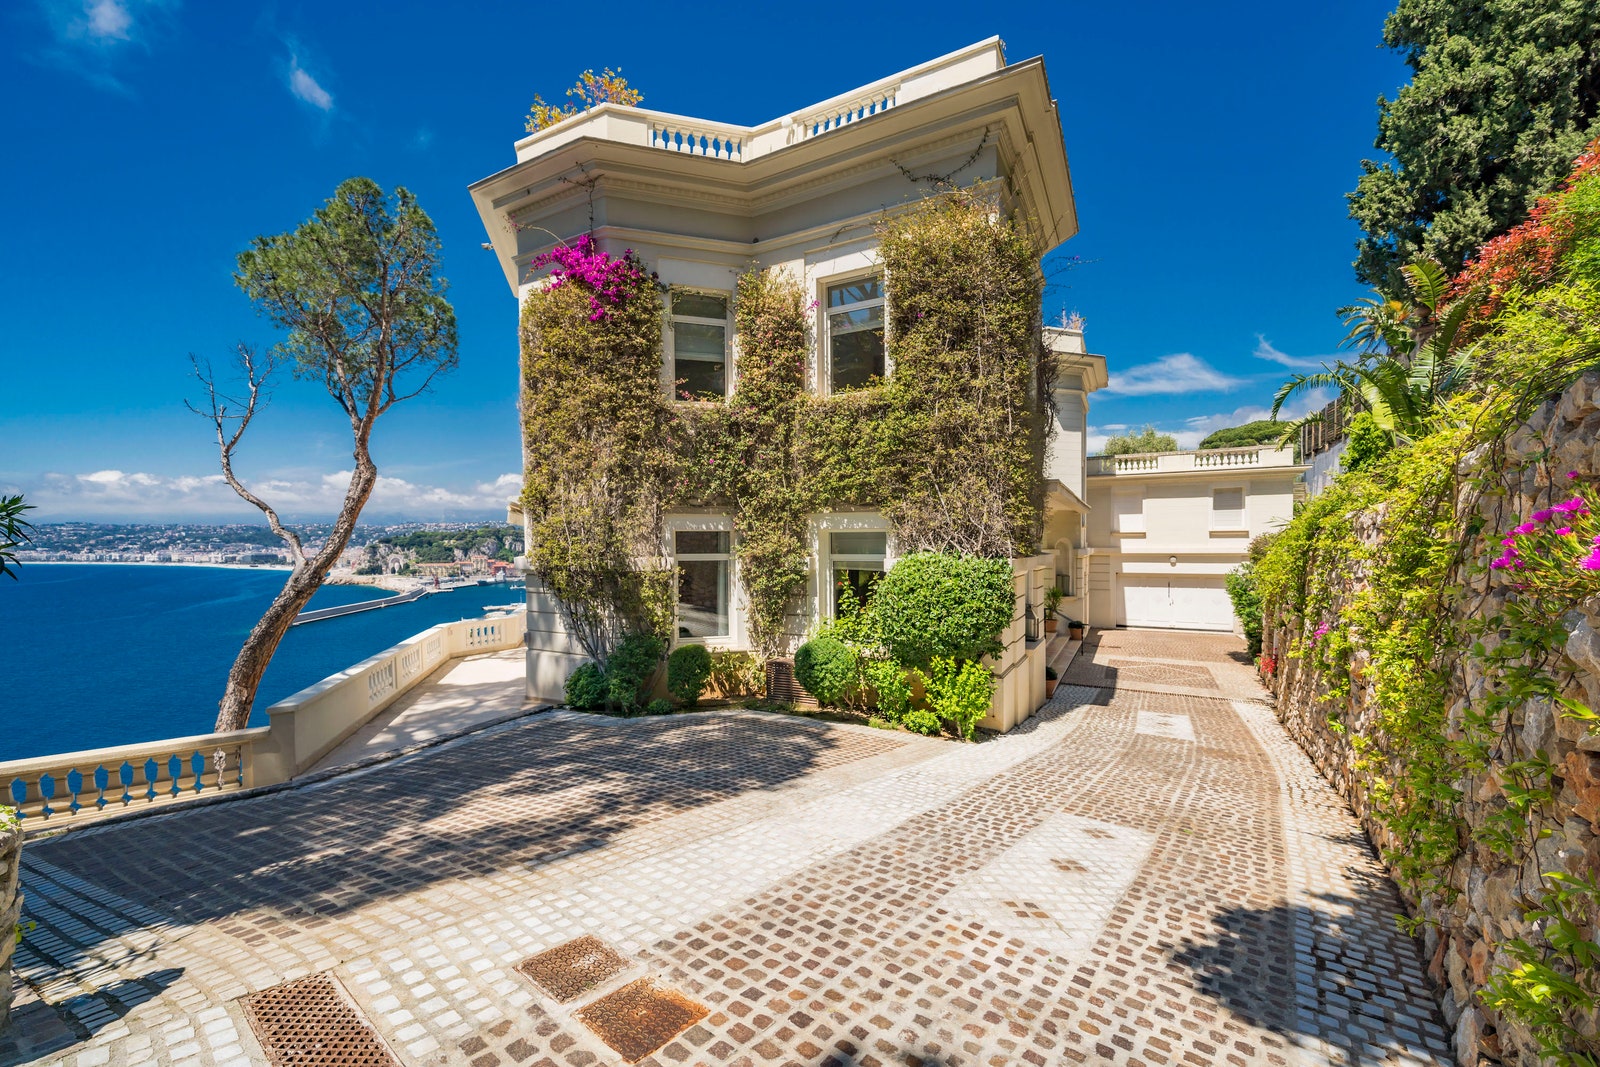 Дом Шона Коннери в Ницце выставлен на продажу